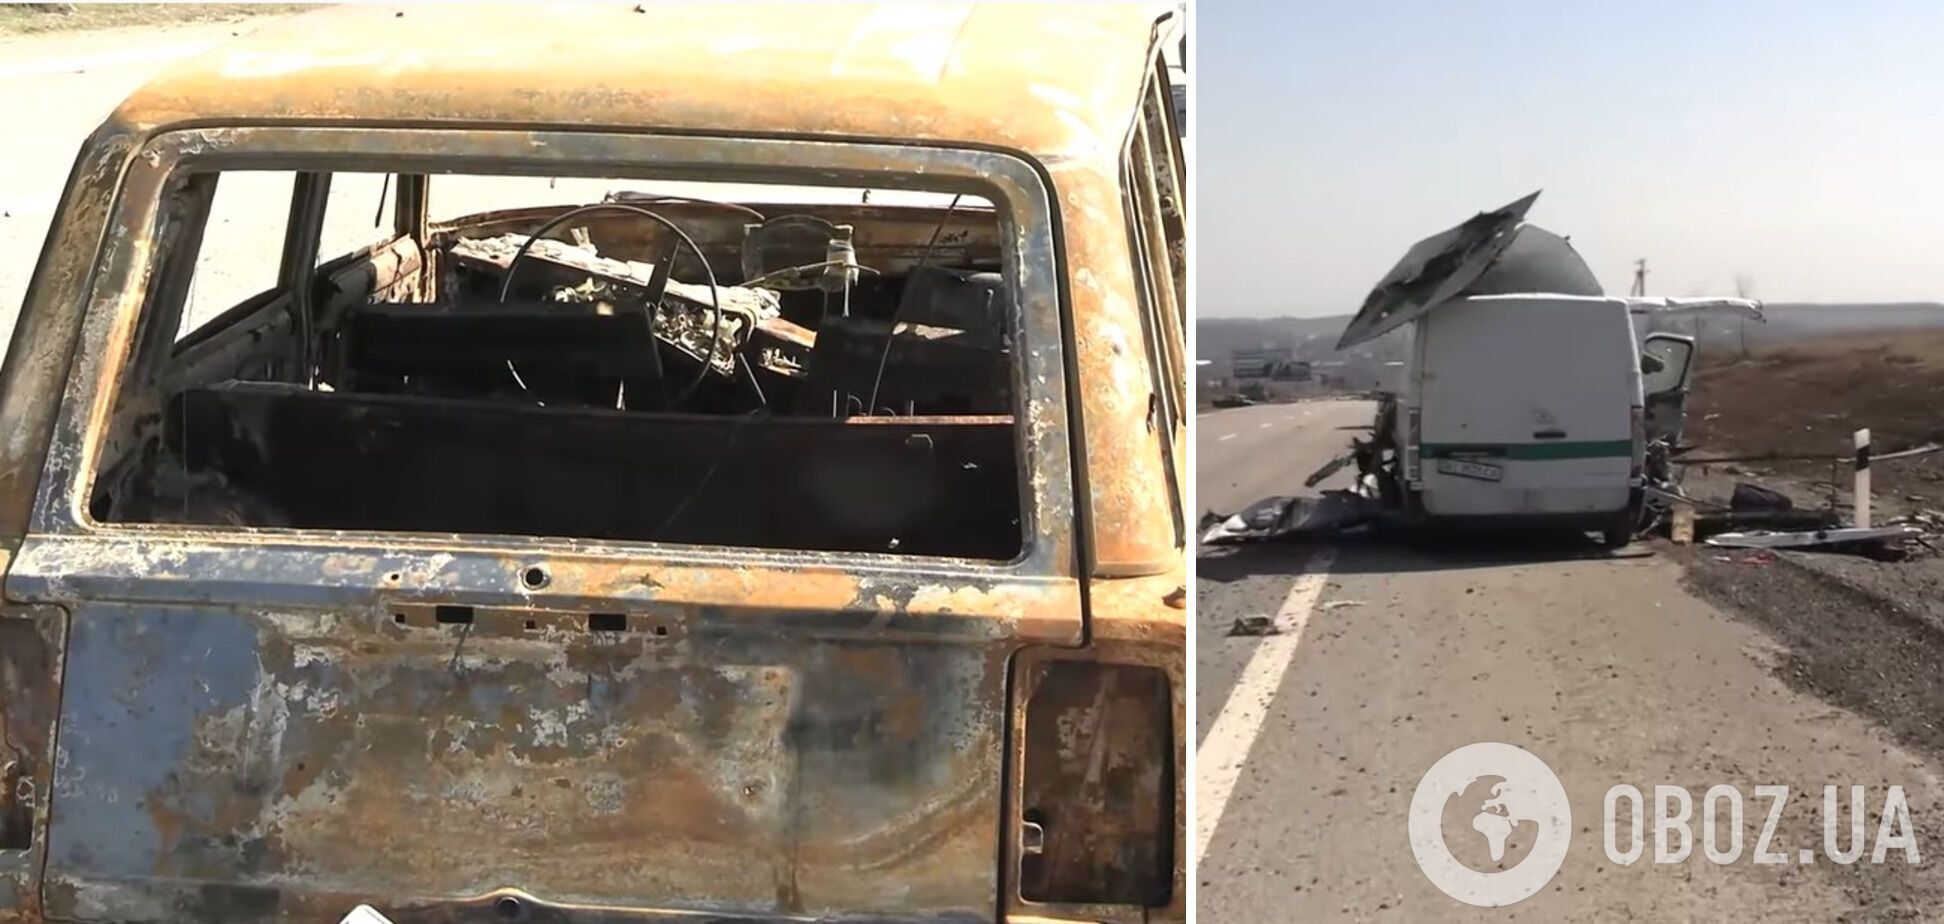 Расстрелянные и сожженные оккупантами автомобили местных жителей